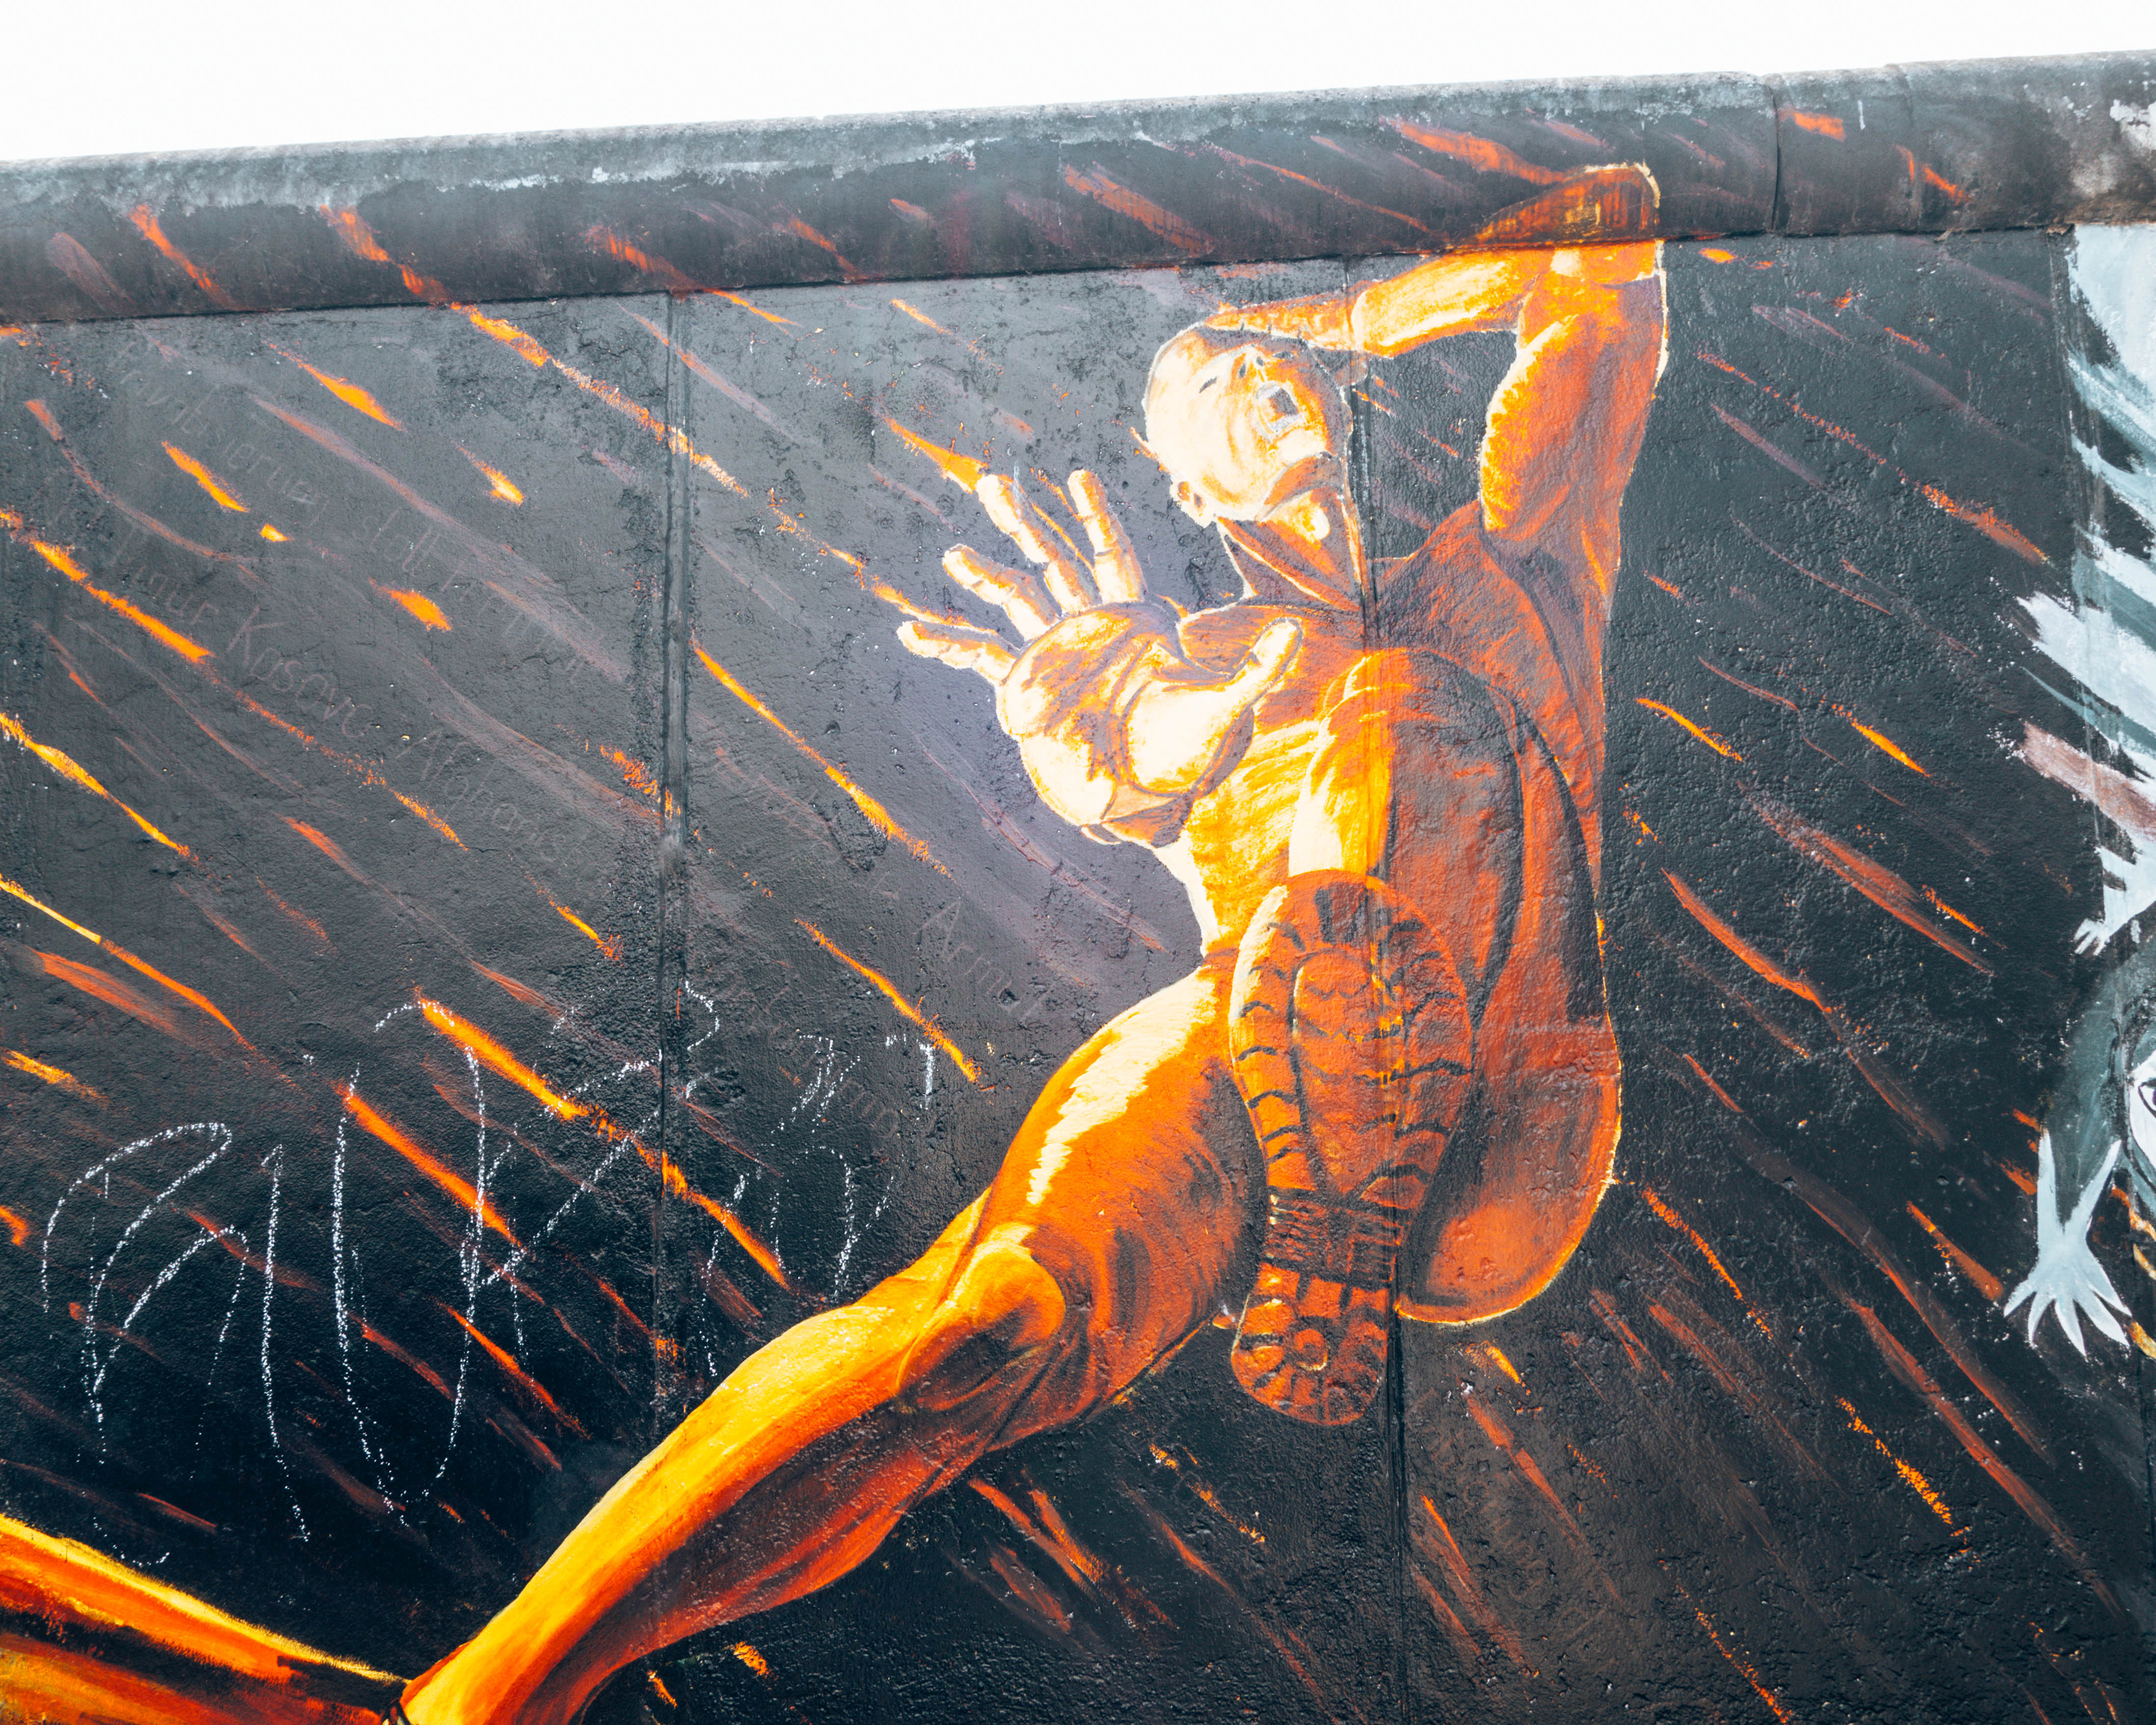 Man falling, Part of the East Side Gallery, street art museum in Berlin